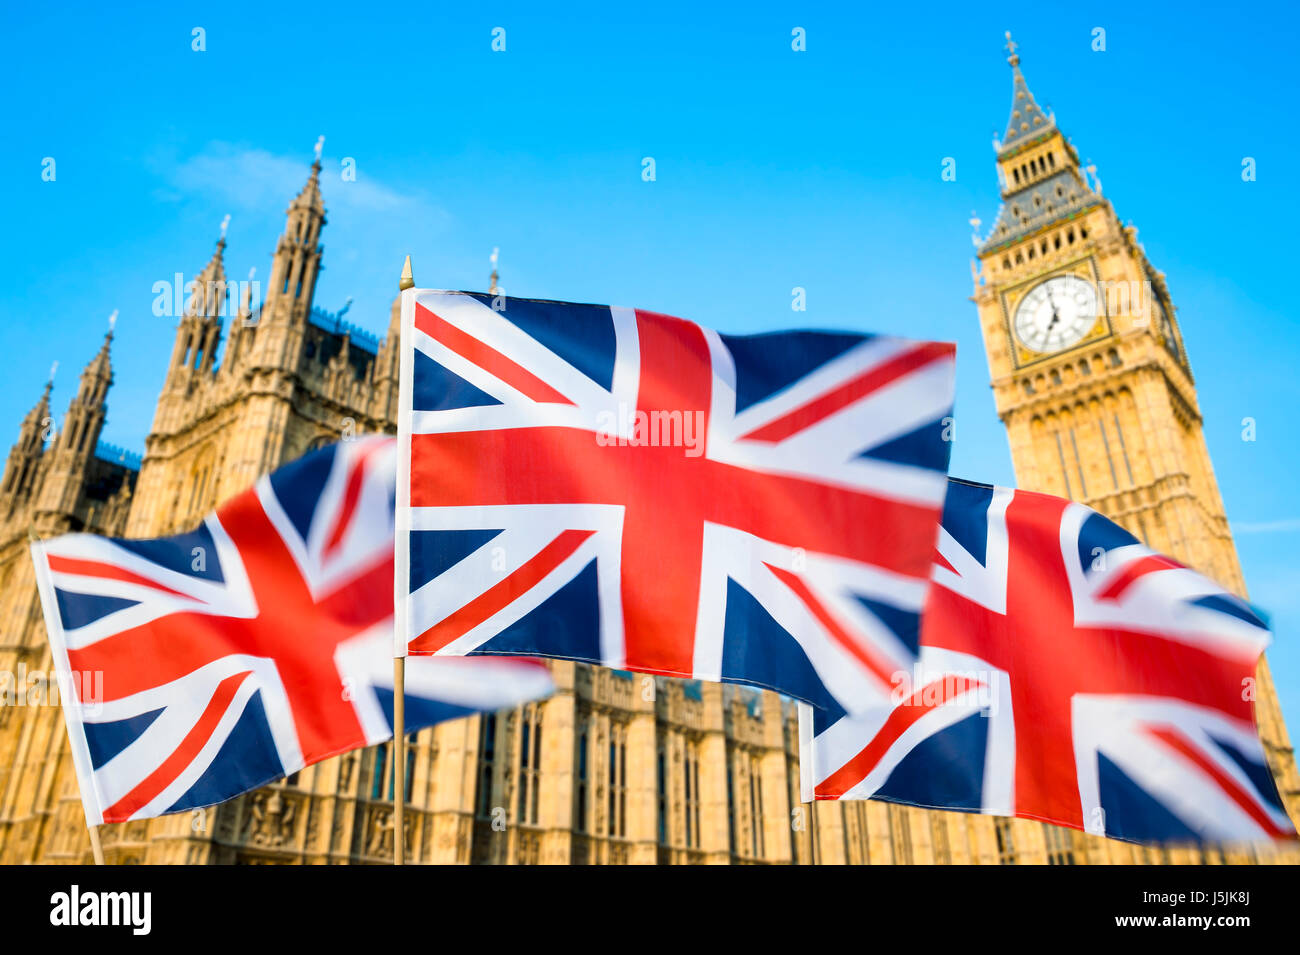 Grande britannica Union Jack flag sflying in motion blur nella parte anteriore del Big Ben e le Camere del Parlamento presso il Palazzo di Westminster, Londra, Regno Unito Foto Stock